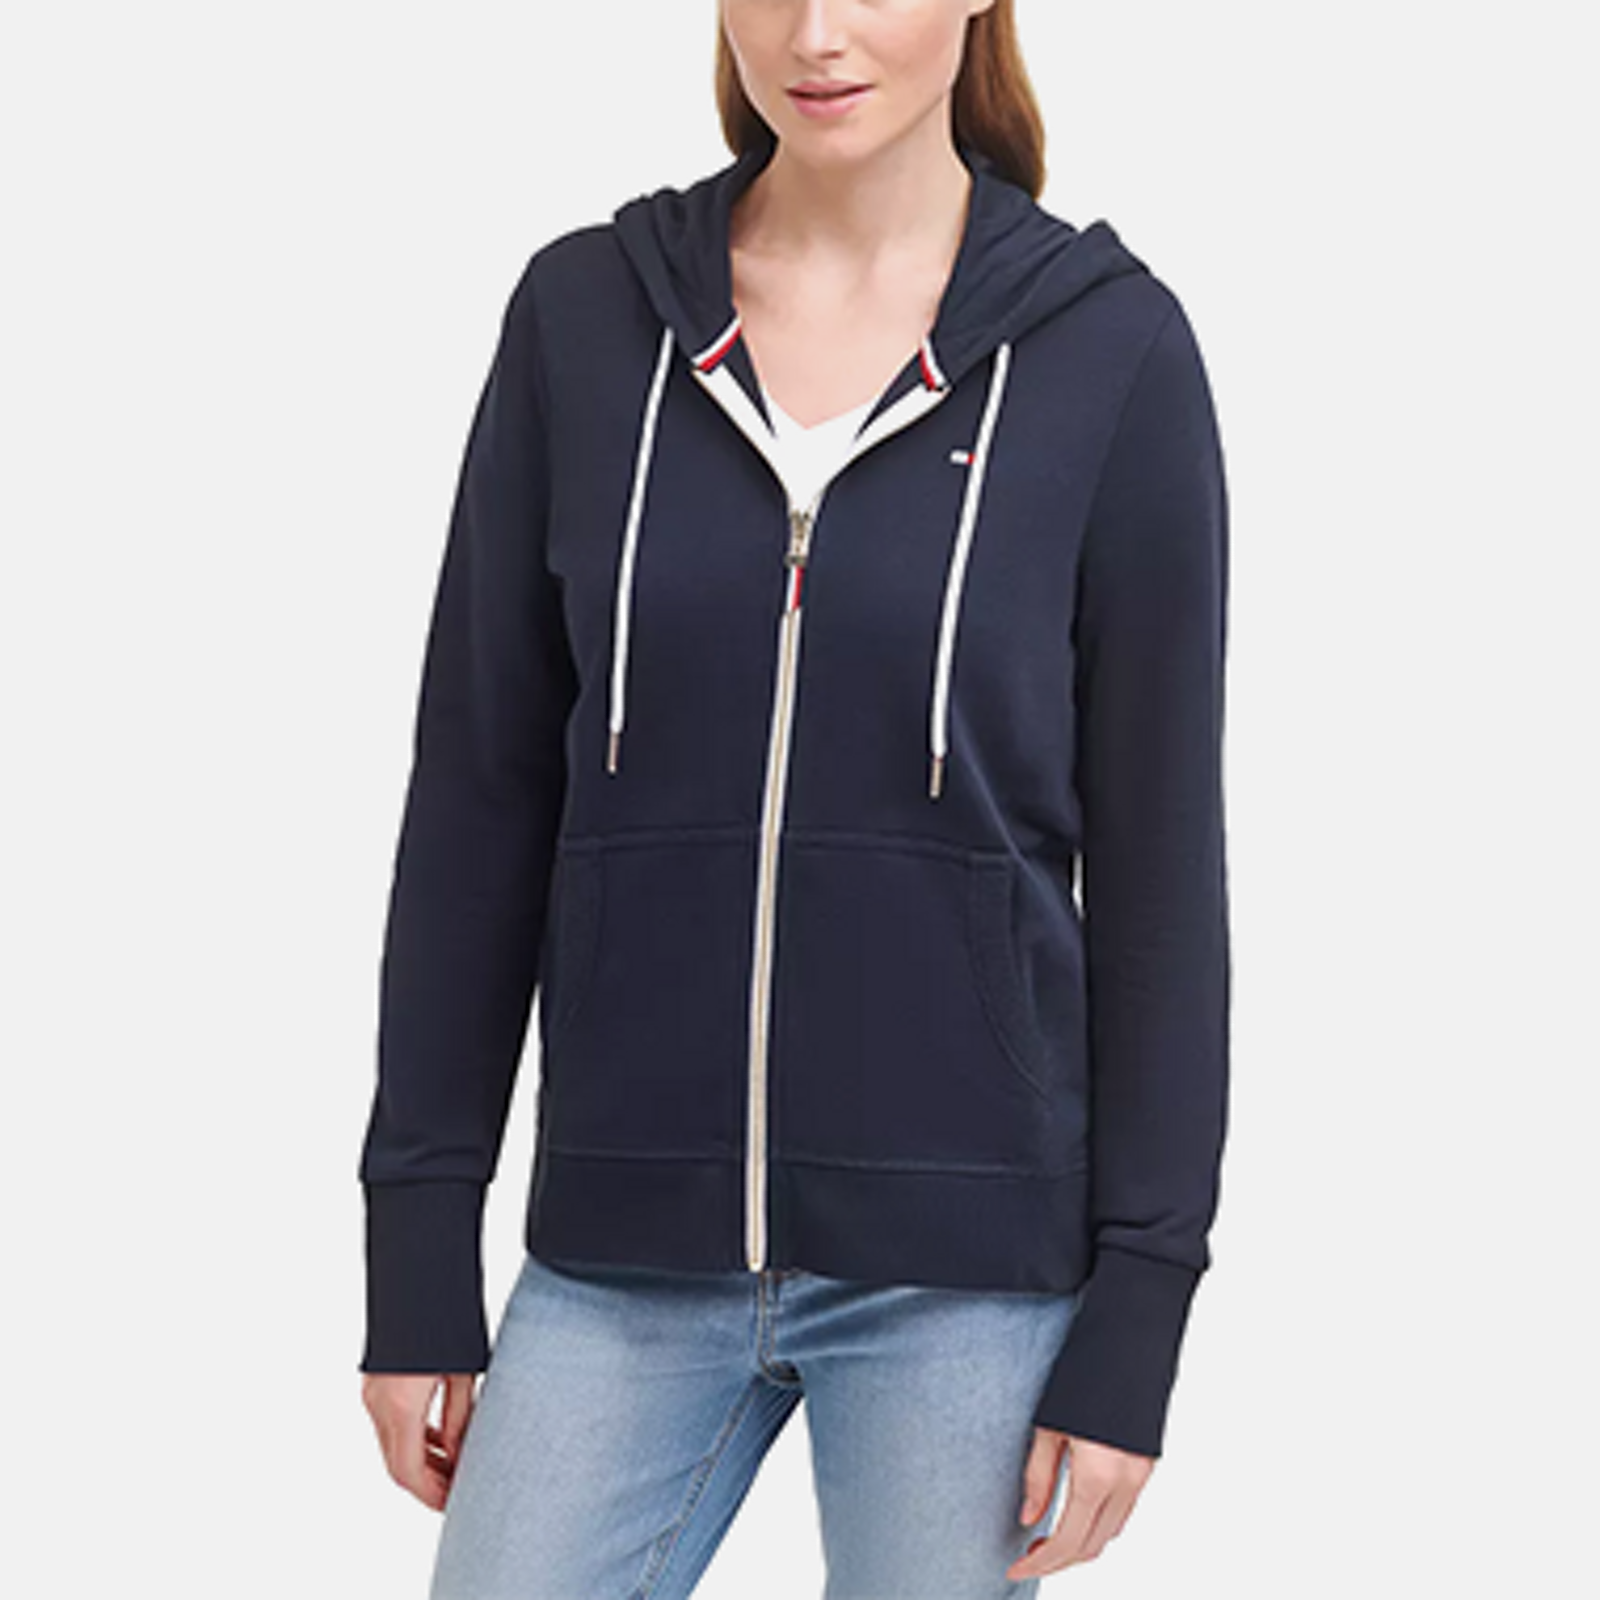 Full Zip Women's Hoodies & Sweatshirts - Macy's